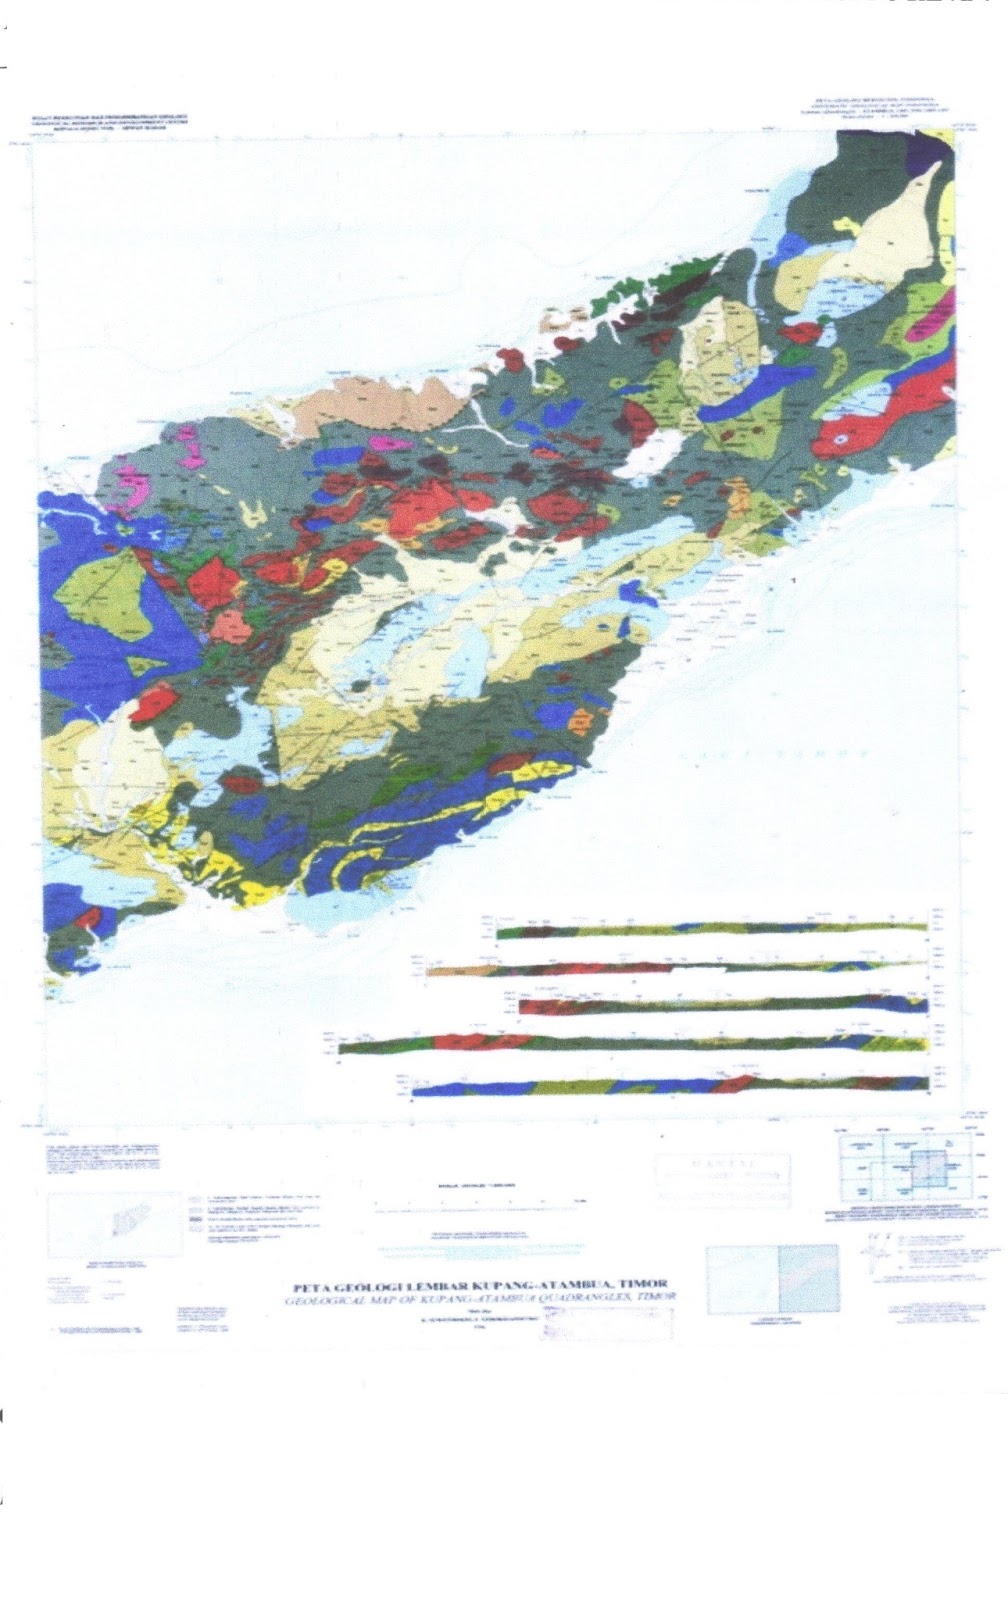 Tony Bani Urutan Stratigrafi Geologi Timor